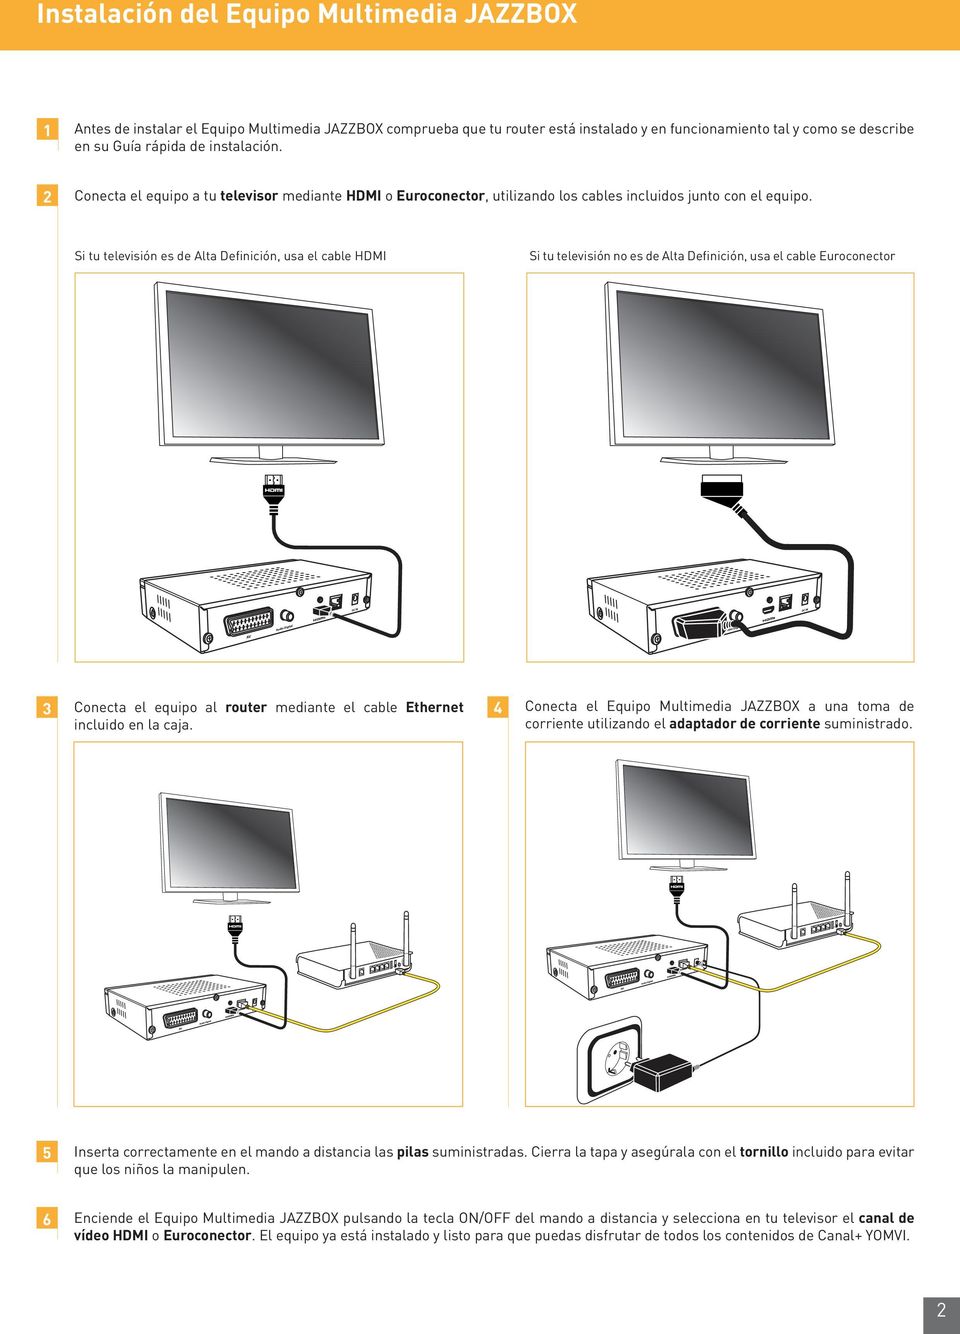 Si tu televisión es de Alta Definición, usa el cable HDMI Si tu televisión no es de Alta Definición, usa el cable Euroconector 3 Conecta el equipo al router mediante el cable Ethernet 4 incluido en